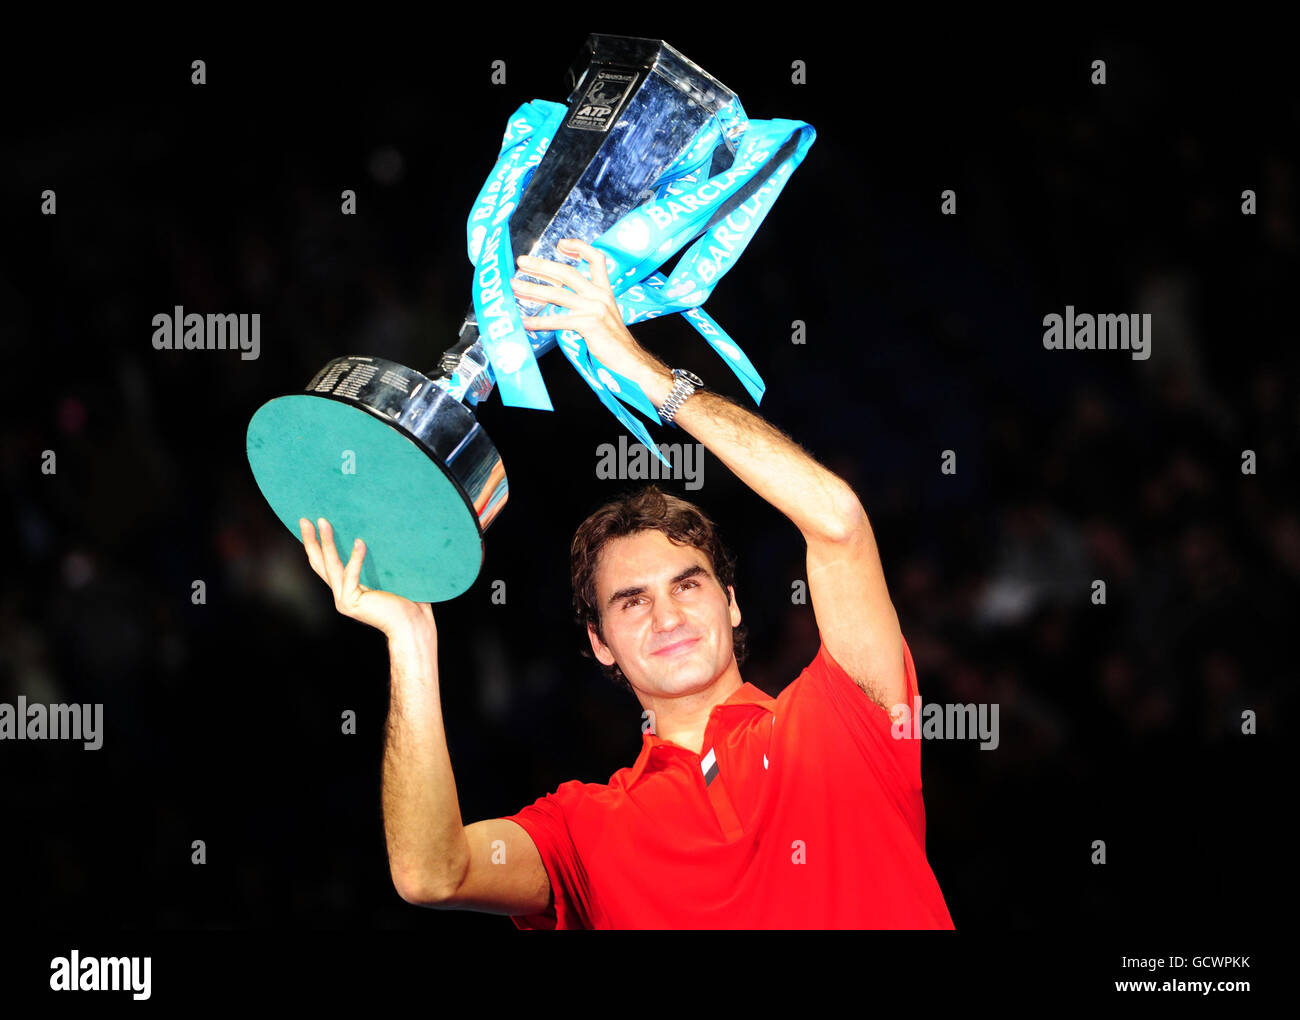 Roger Federer in Svizzera alza il trofeo dopo aver sconfitto Rafael Nadal in Spagna durante l'ottavo giorno delle finali dell'ATP World Tennis Tour di Barclays alla O2 Arena di Londra. Foto Stock